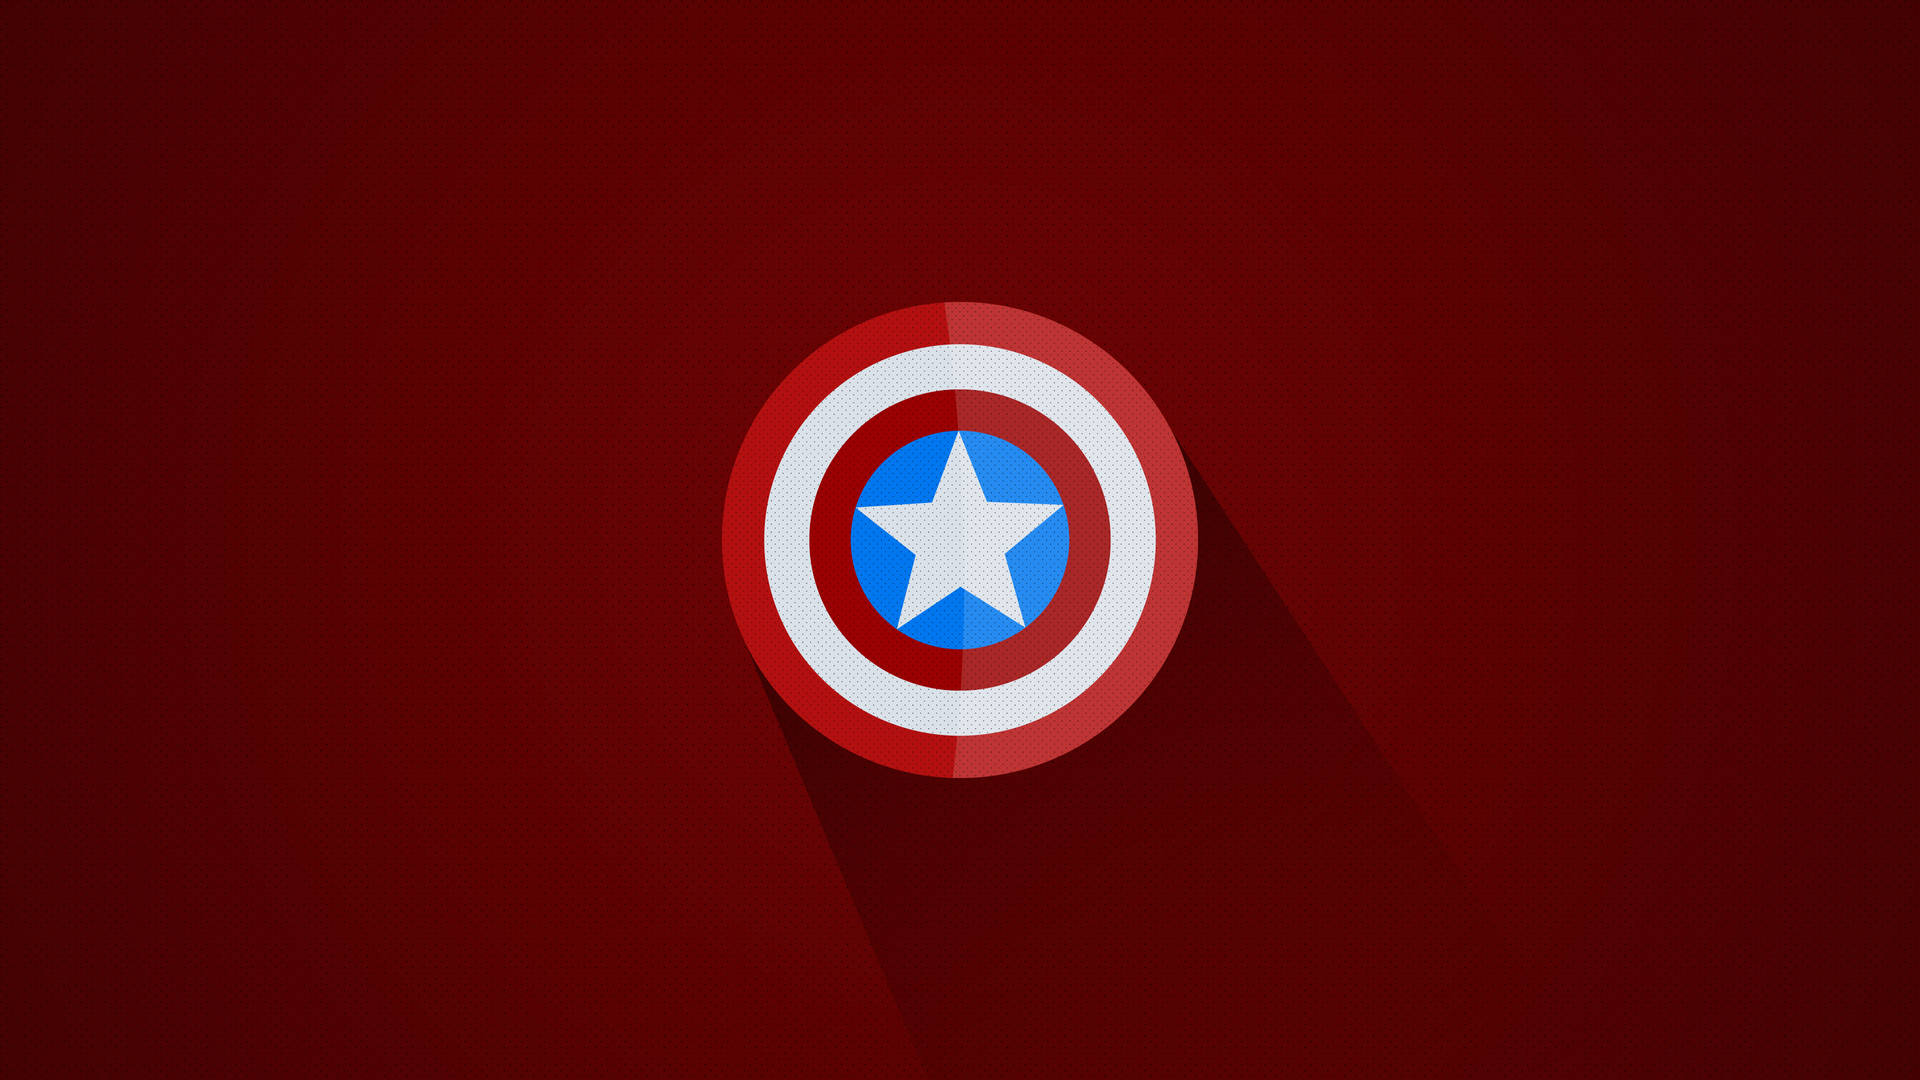 Crimson Captain America Shield Wallpaper